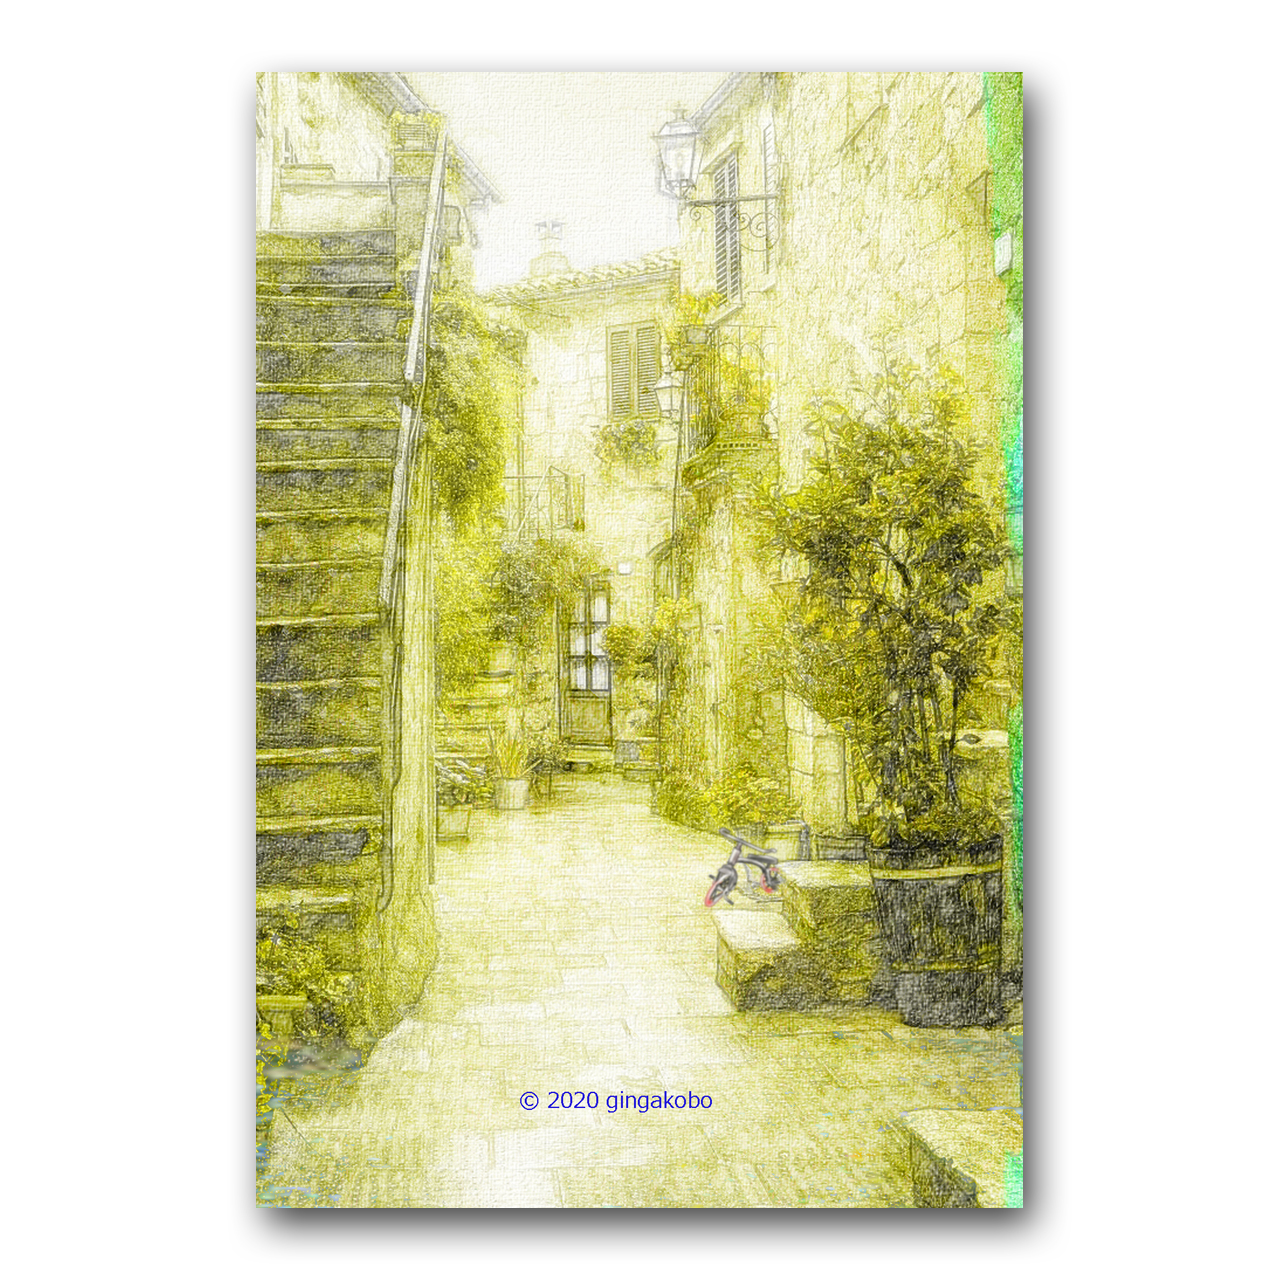 ひそやかな路地裏 ほっこり癒しのイラストポストカード2枚組 No 1018 Iichi ハンドメイド クラフト作品 手仕事品の通販